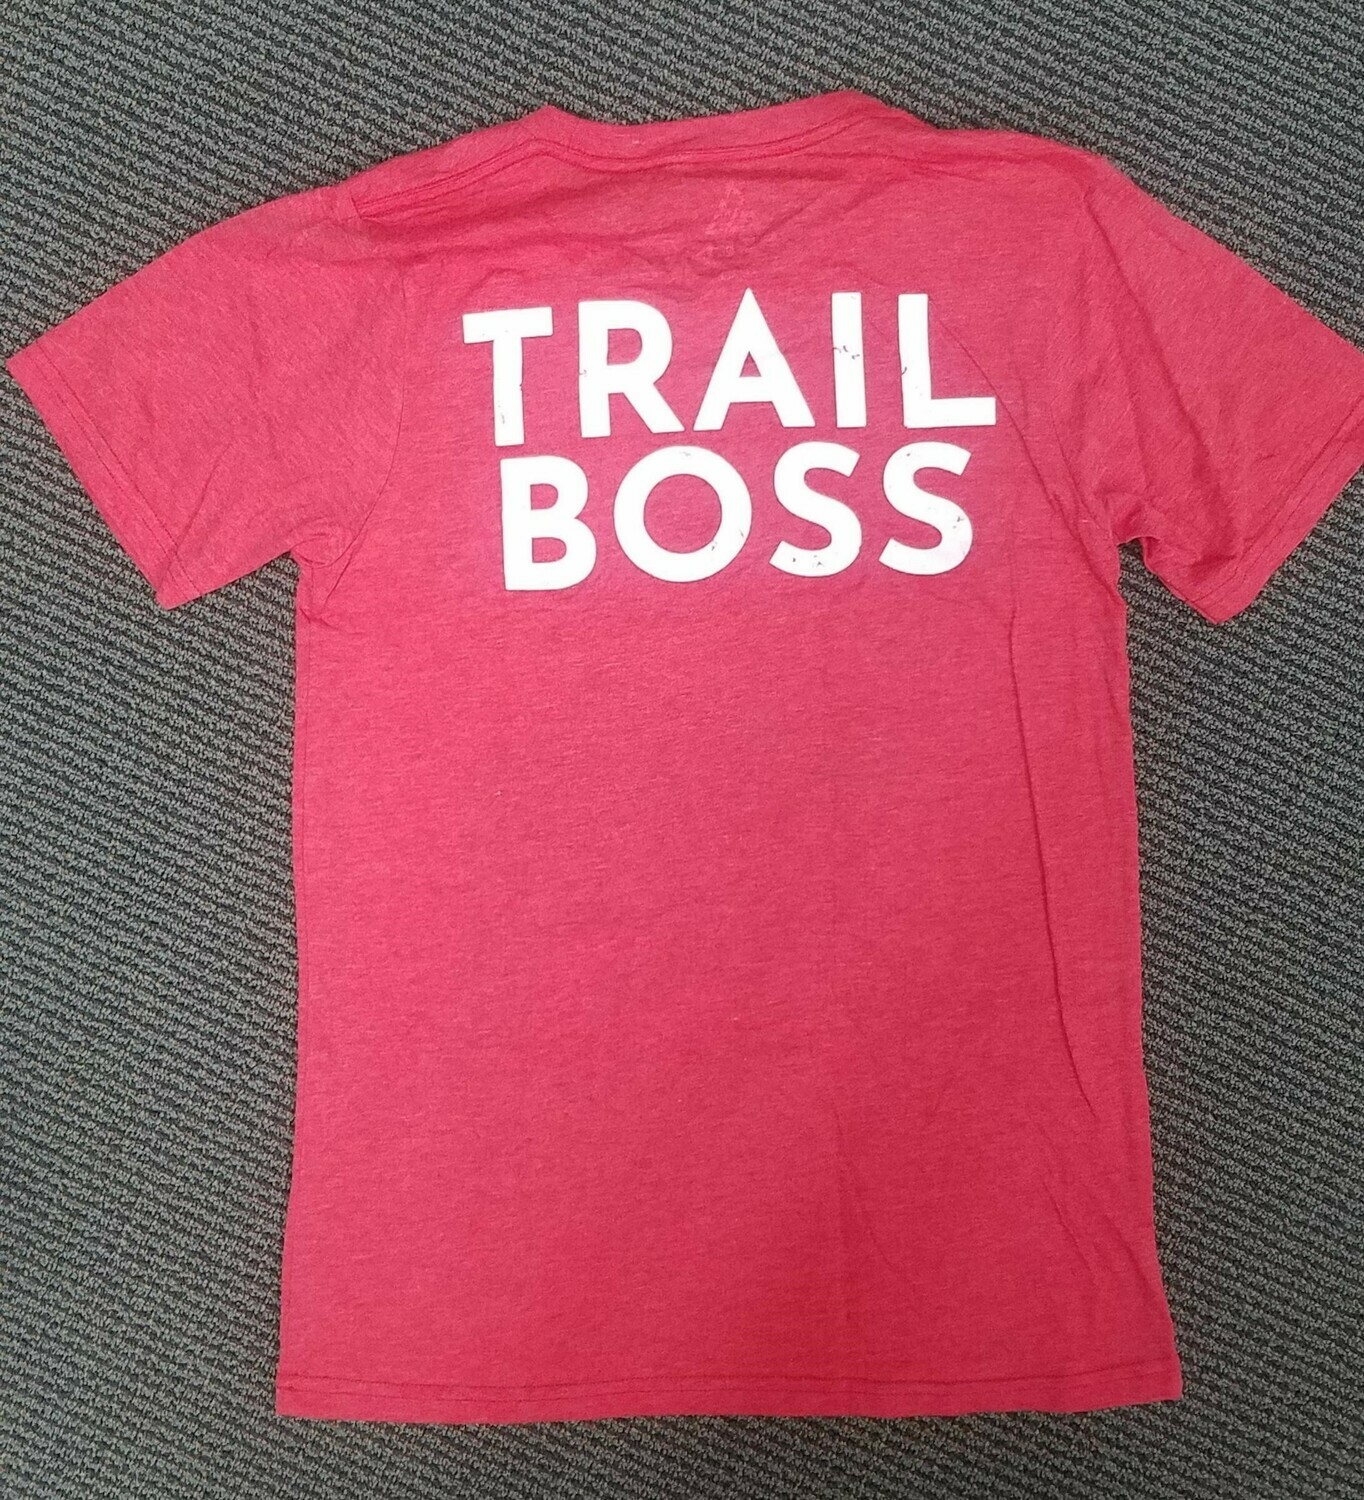 Trail Boss t-shirts